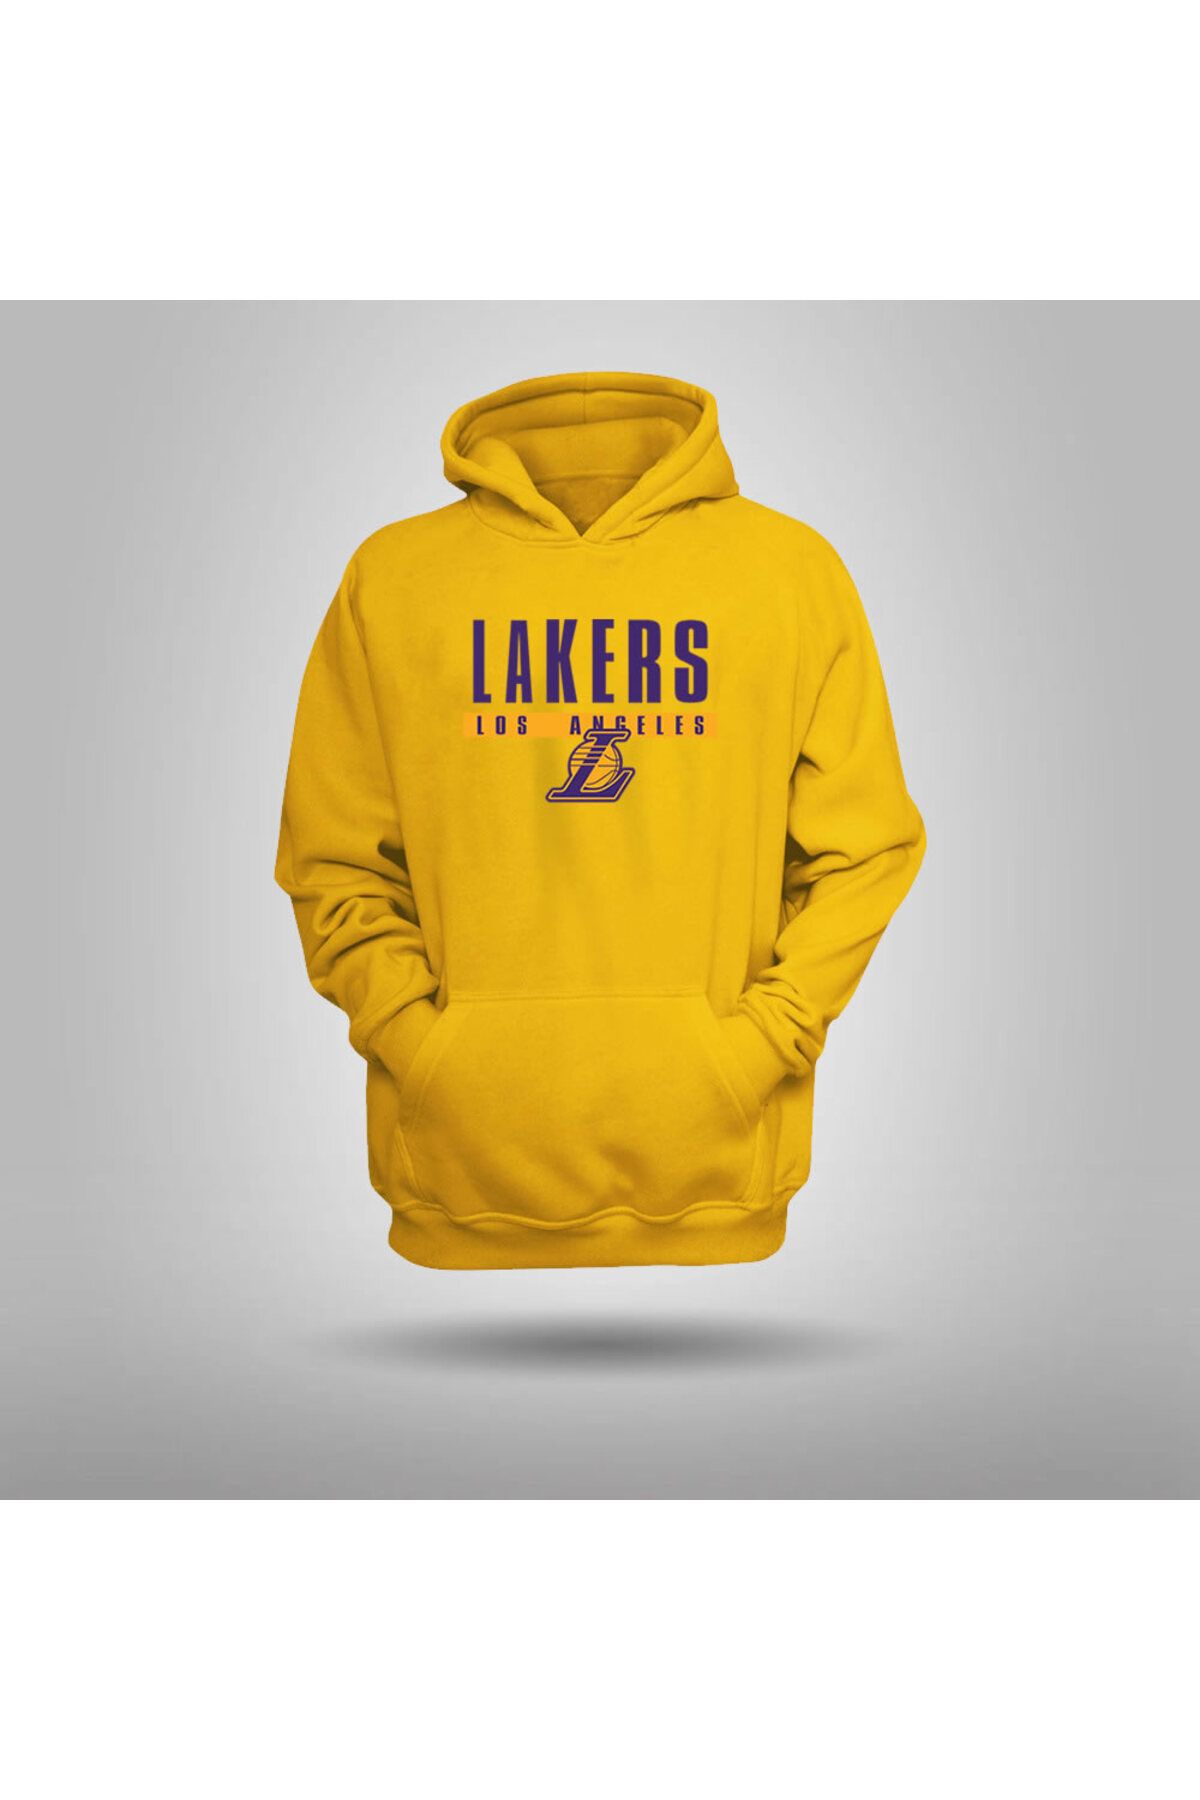 Fanatik Market Los Angeles Lakers Hoodie Fanatik Market